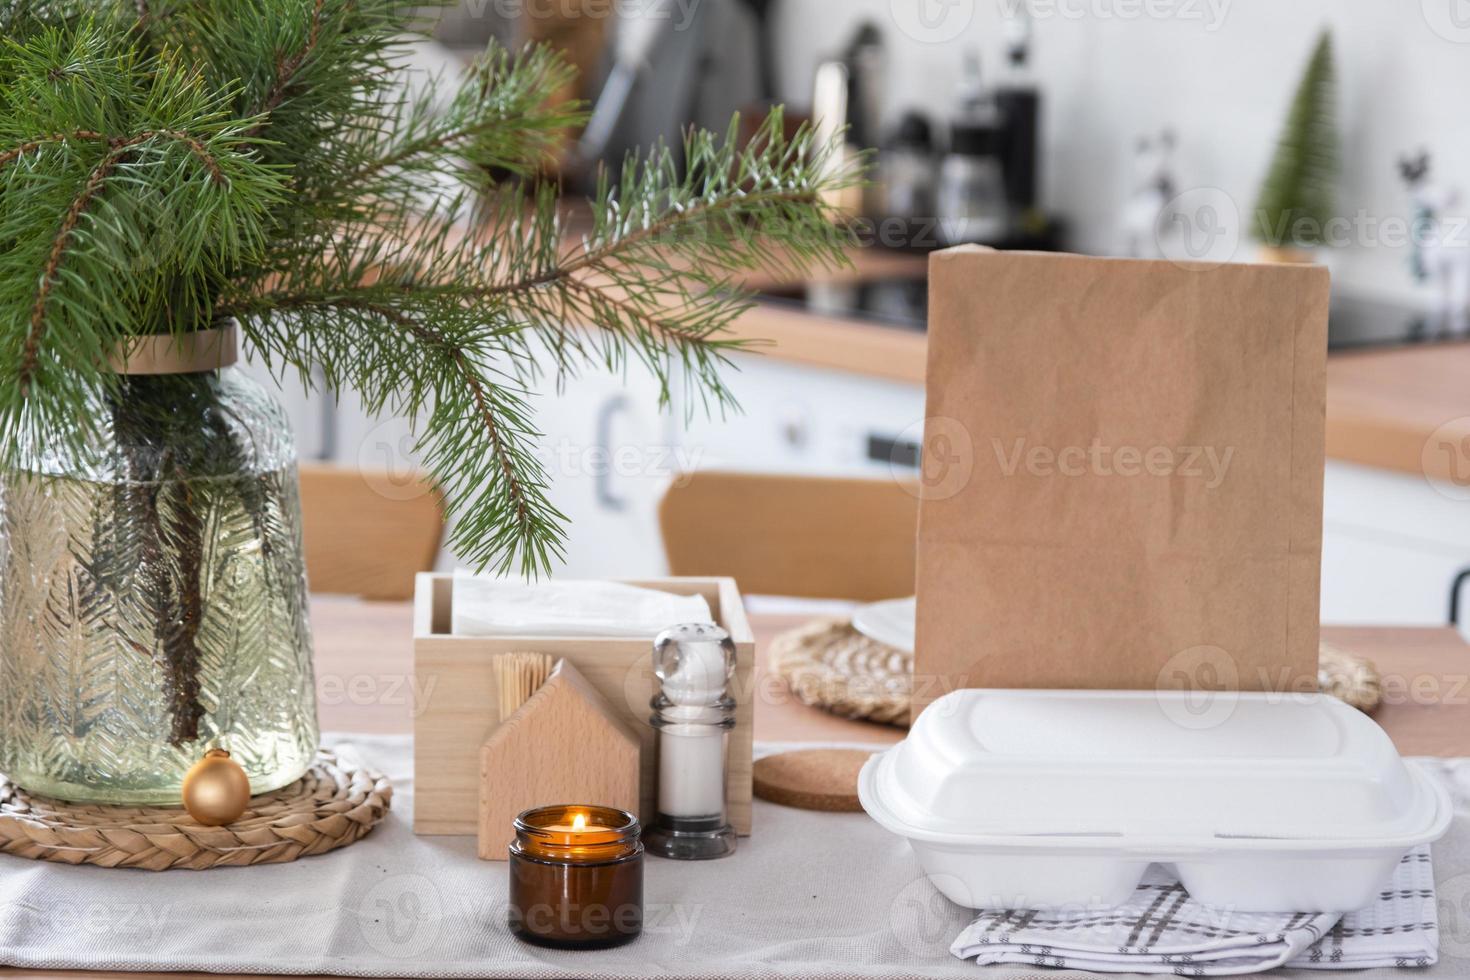 voedsel levering onderhoud containers Aan tafel in wit keuken, feestelijk geserveerd voor viering van Kerstmis en nieuw jaar. besparing tijd, heet bestellen, beschikbaar plastic doos, ambacht pakket. bespotten omhoog foto